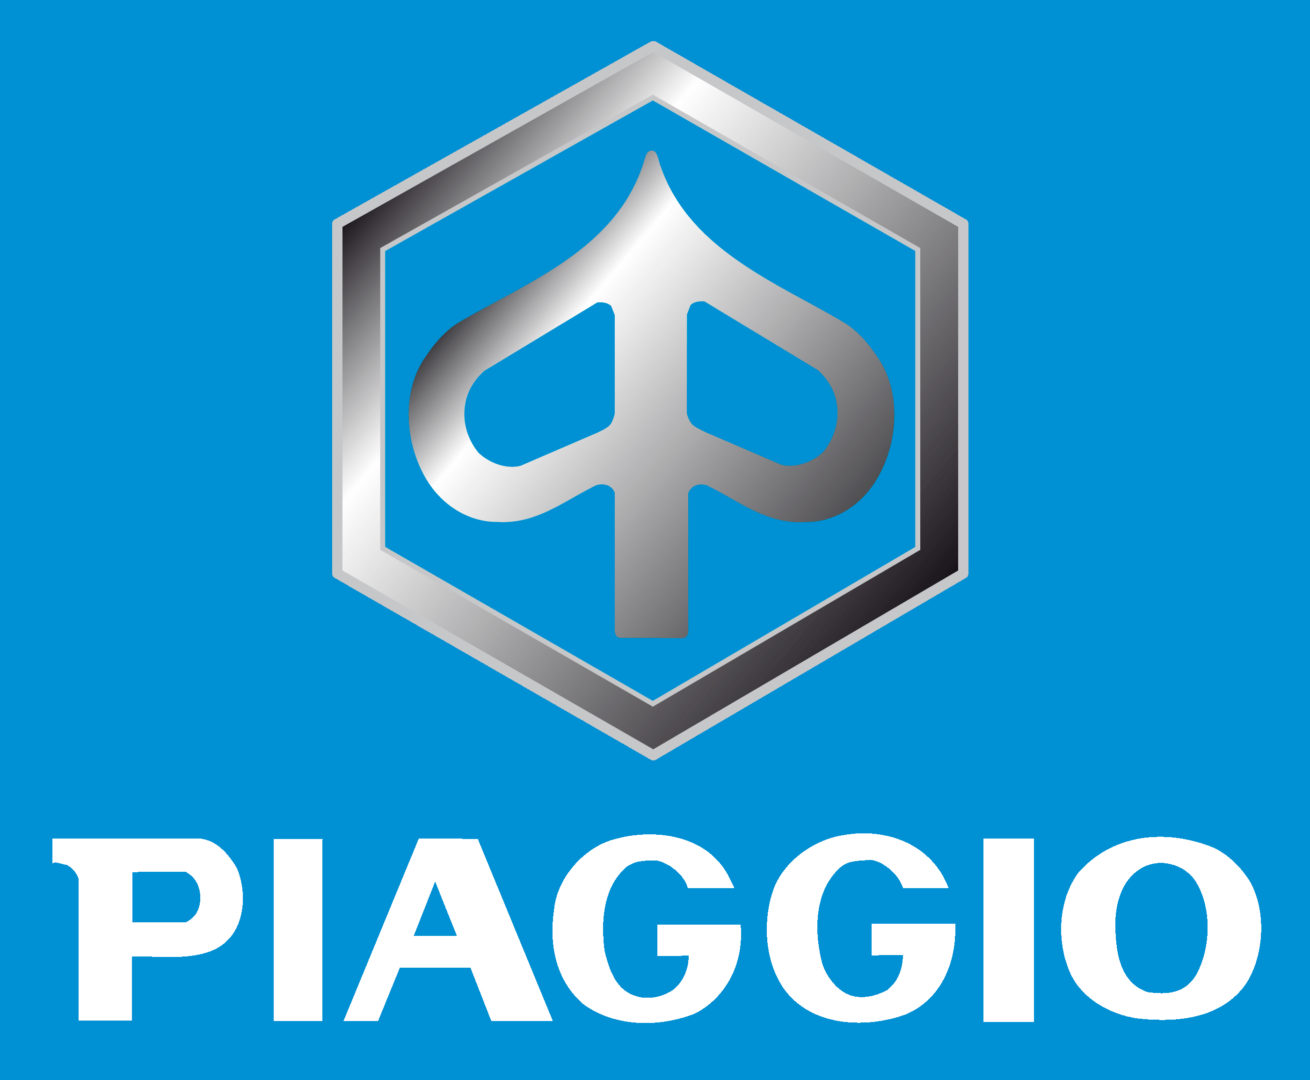 Motorcycle Piaggio logo